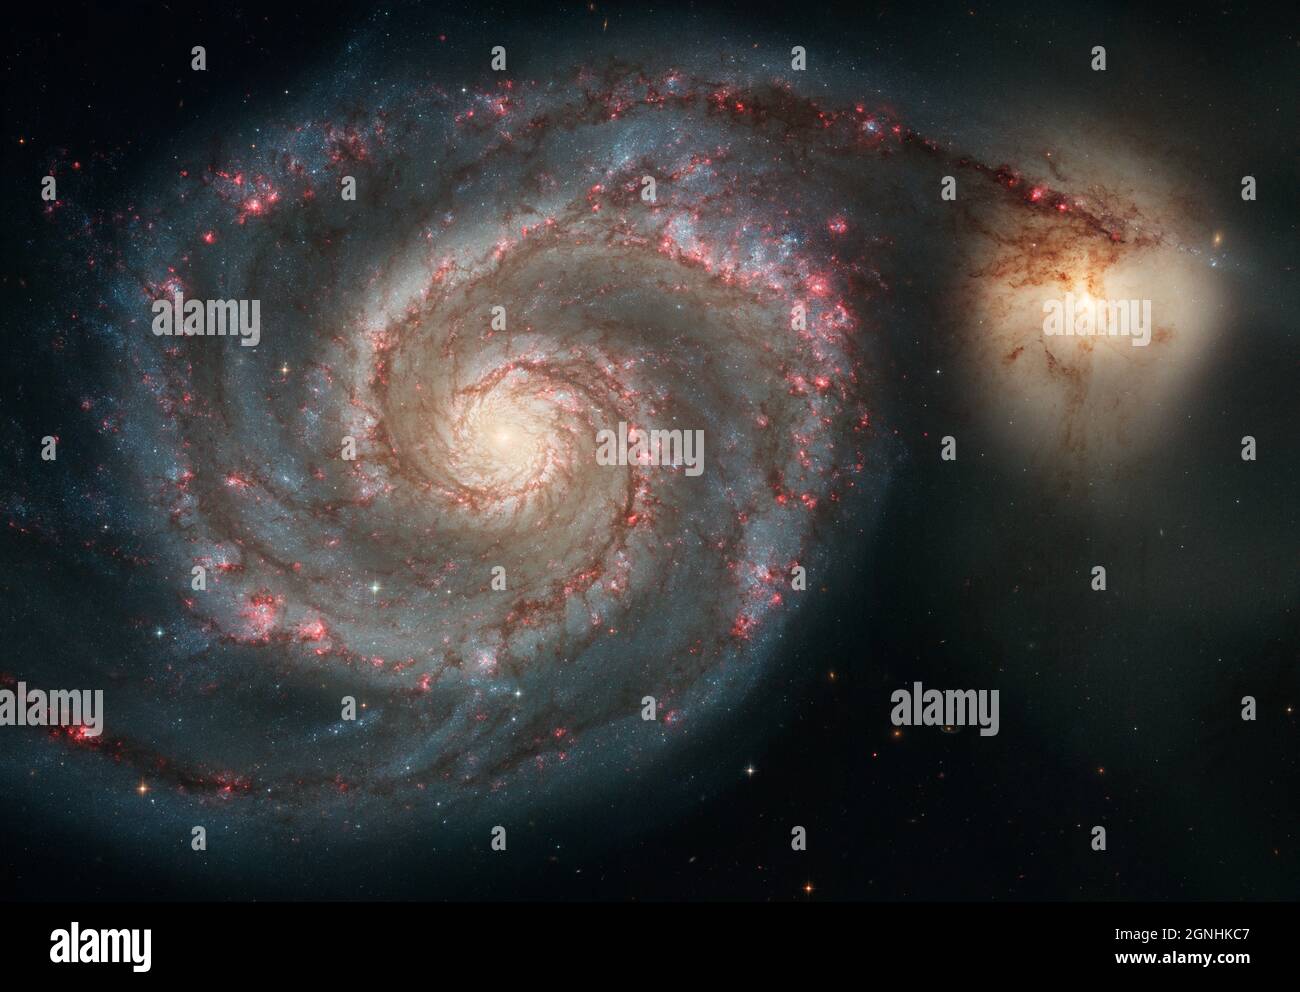 La galassia Whirlpool, M51 a Canes Venatici. Questa immagine composita Hubble mostra la luce chiara e la luce dell'emissione di idrogeno incandescente, che è associata alle stelle giovani più luminose nei bracci a spirale. Fonte immagine NASA/ESA Hubble Space Telescope Foto Stock